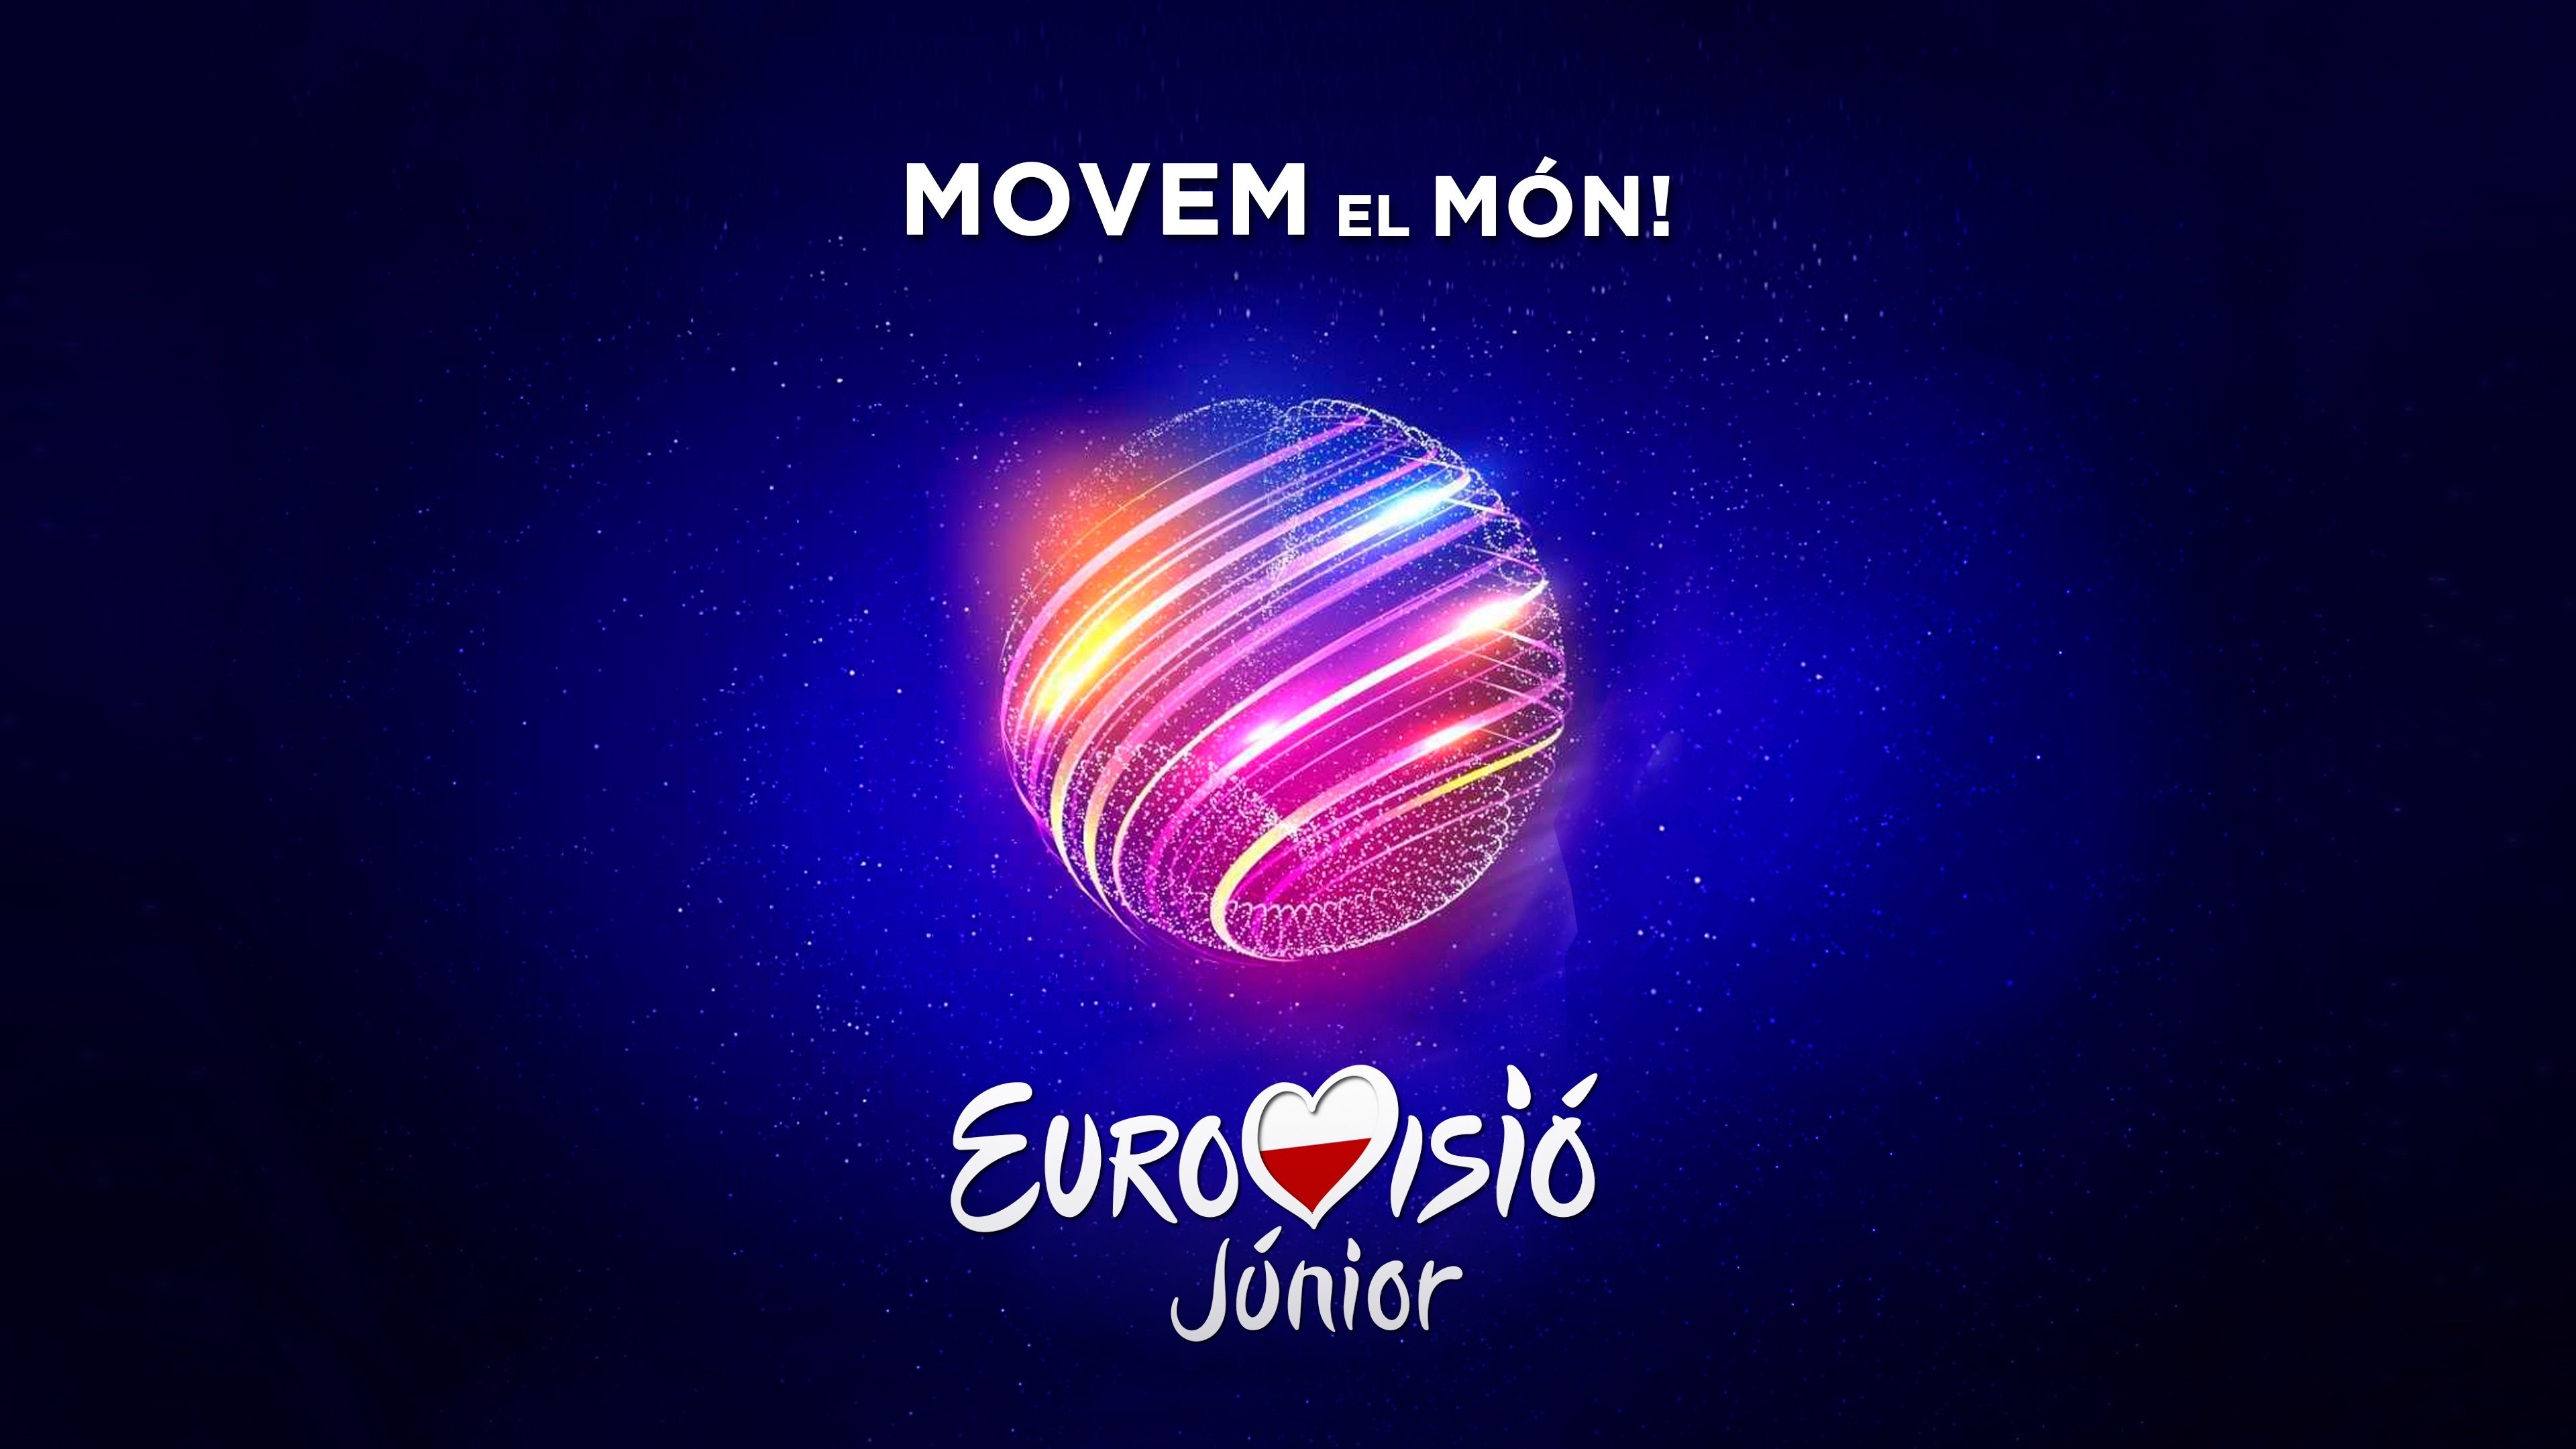 España ya busca a su representante para Eurovisión Junior 2020